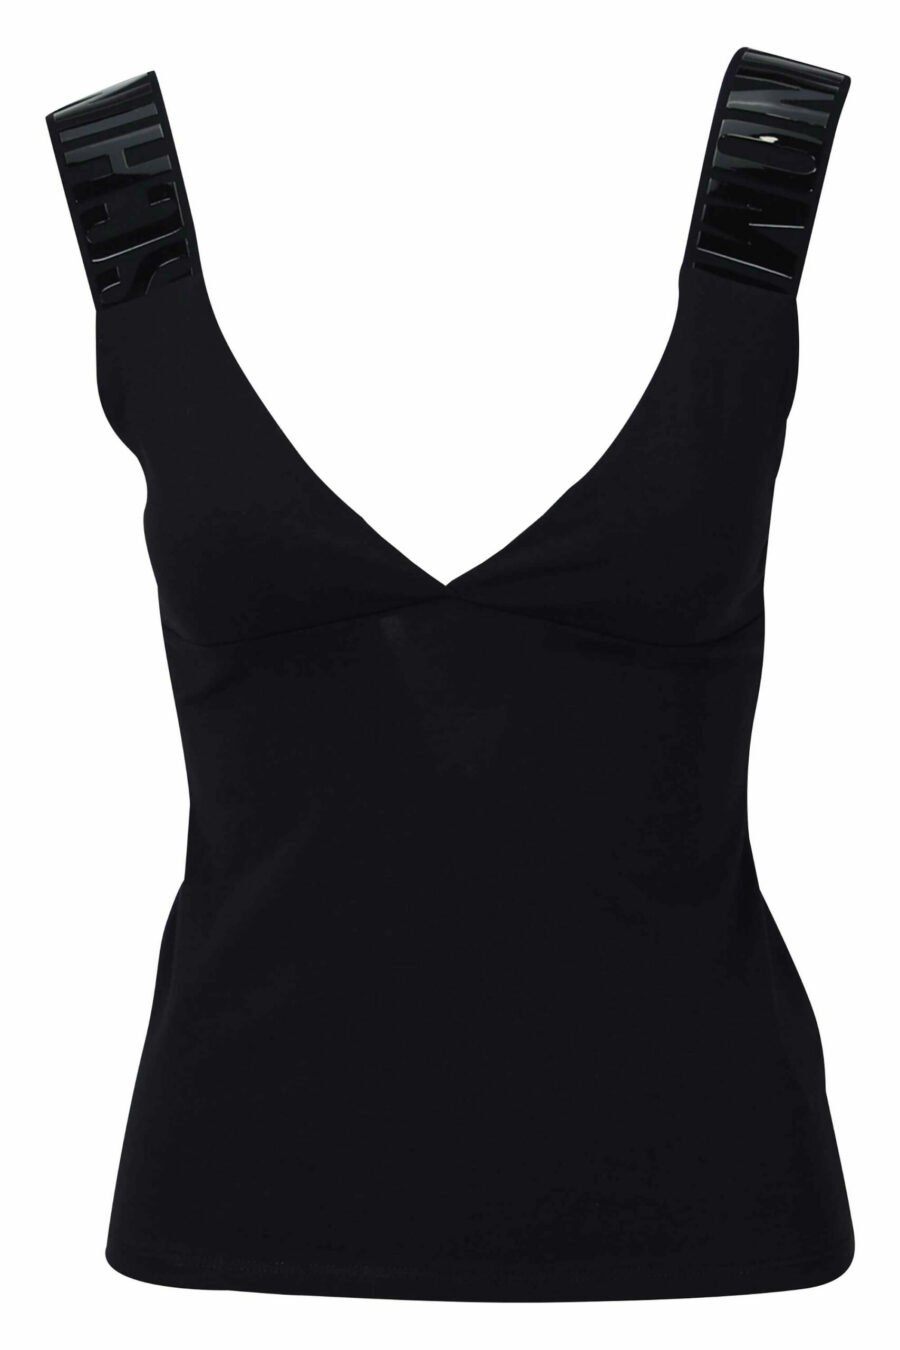 T-shirt noir sans manches avec logo rayé monochrome - 889316615043 1 scaled